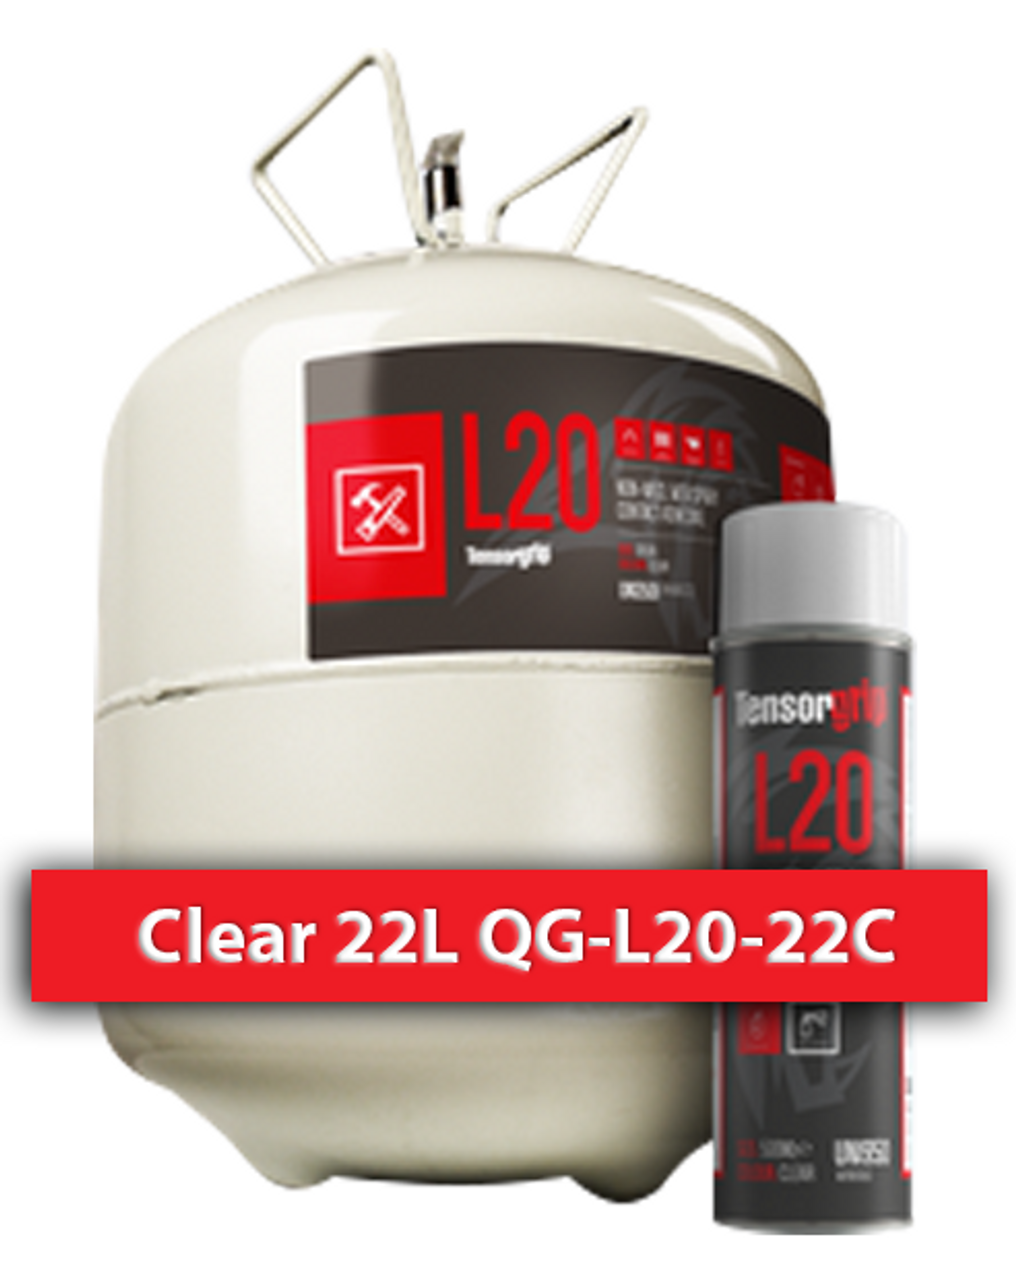 Flamable, High Temprature Contact Adhesive Clear 22 L QG-L20-22C Quin Global TensorGrip